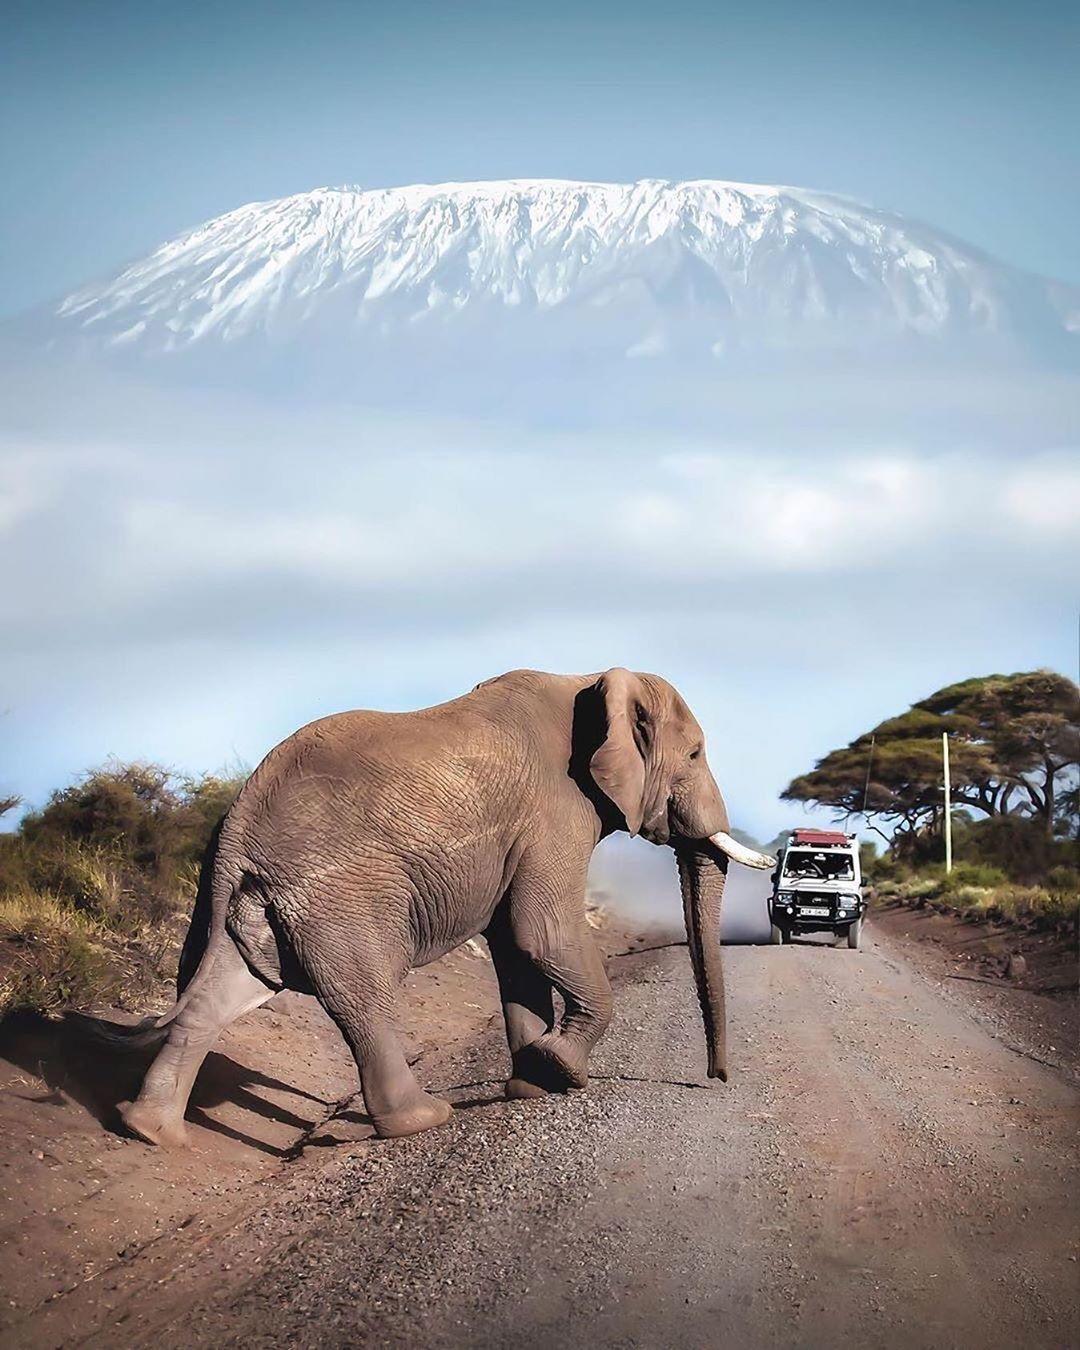  大象与乞力马扎罗雪山，David Rule摄于肯尼亚。 